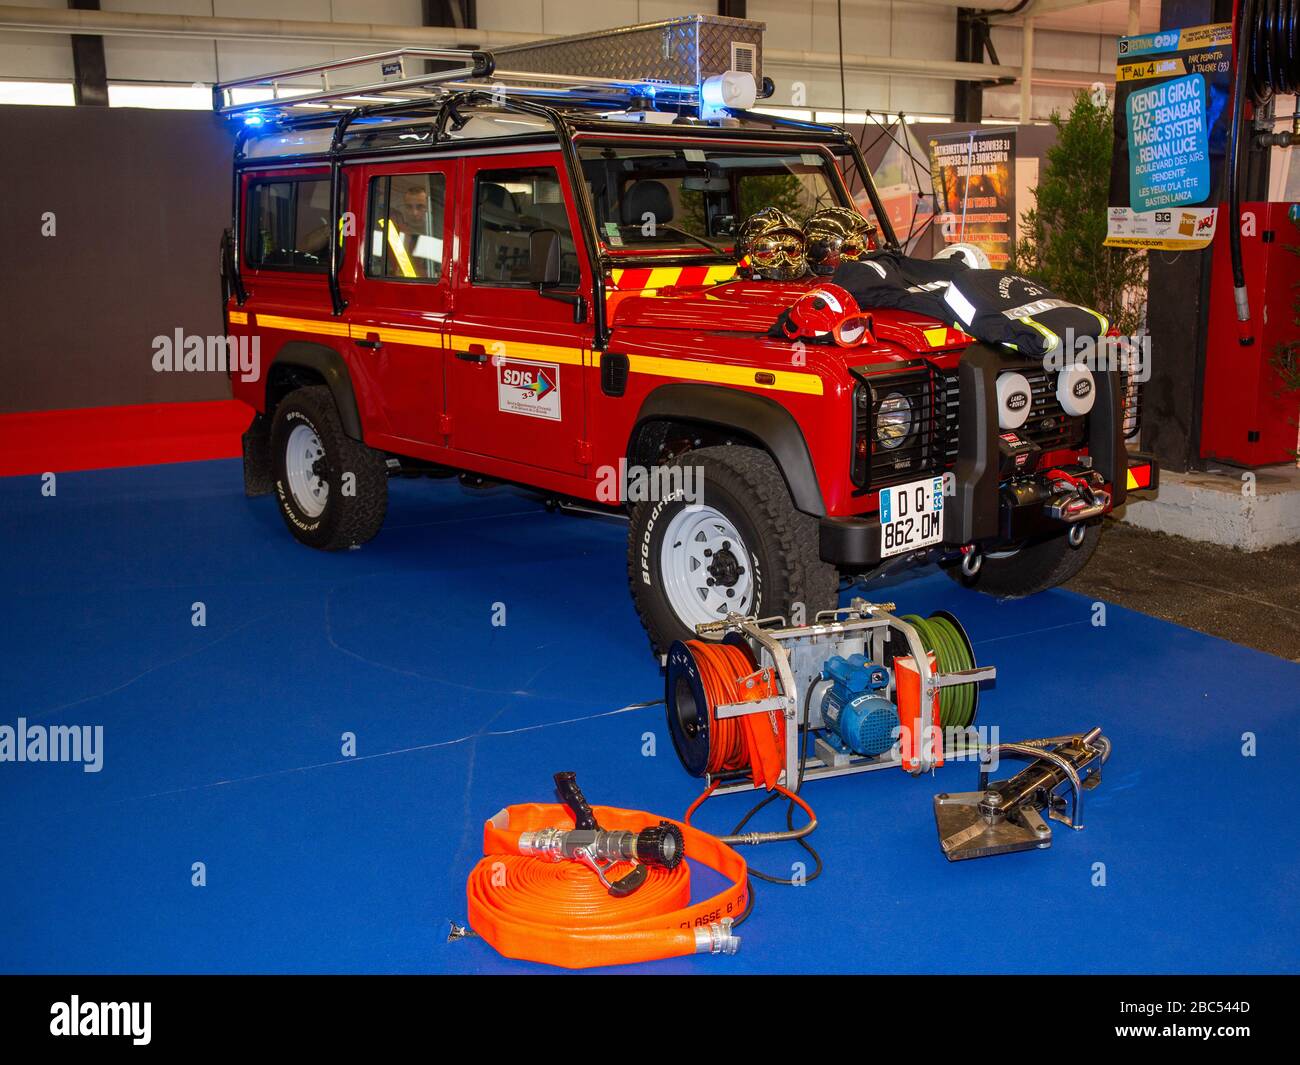 Trouvez Land Rover Fire Rescue + Boat en ligne